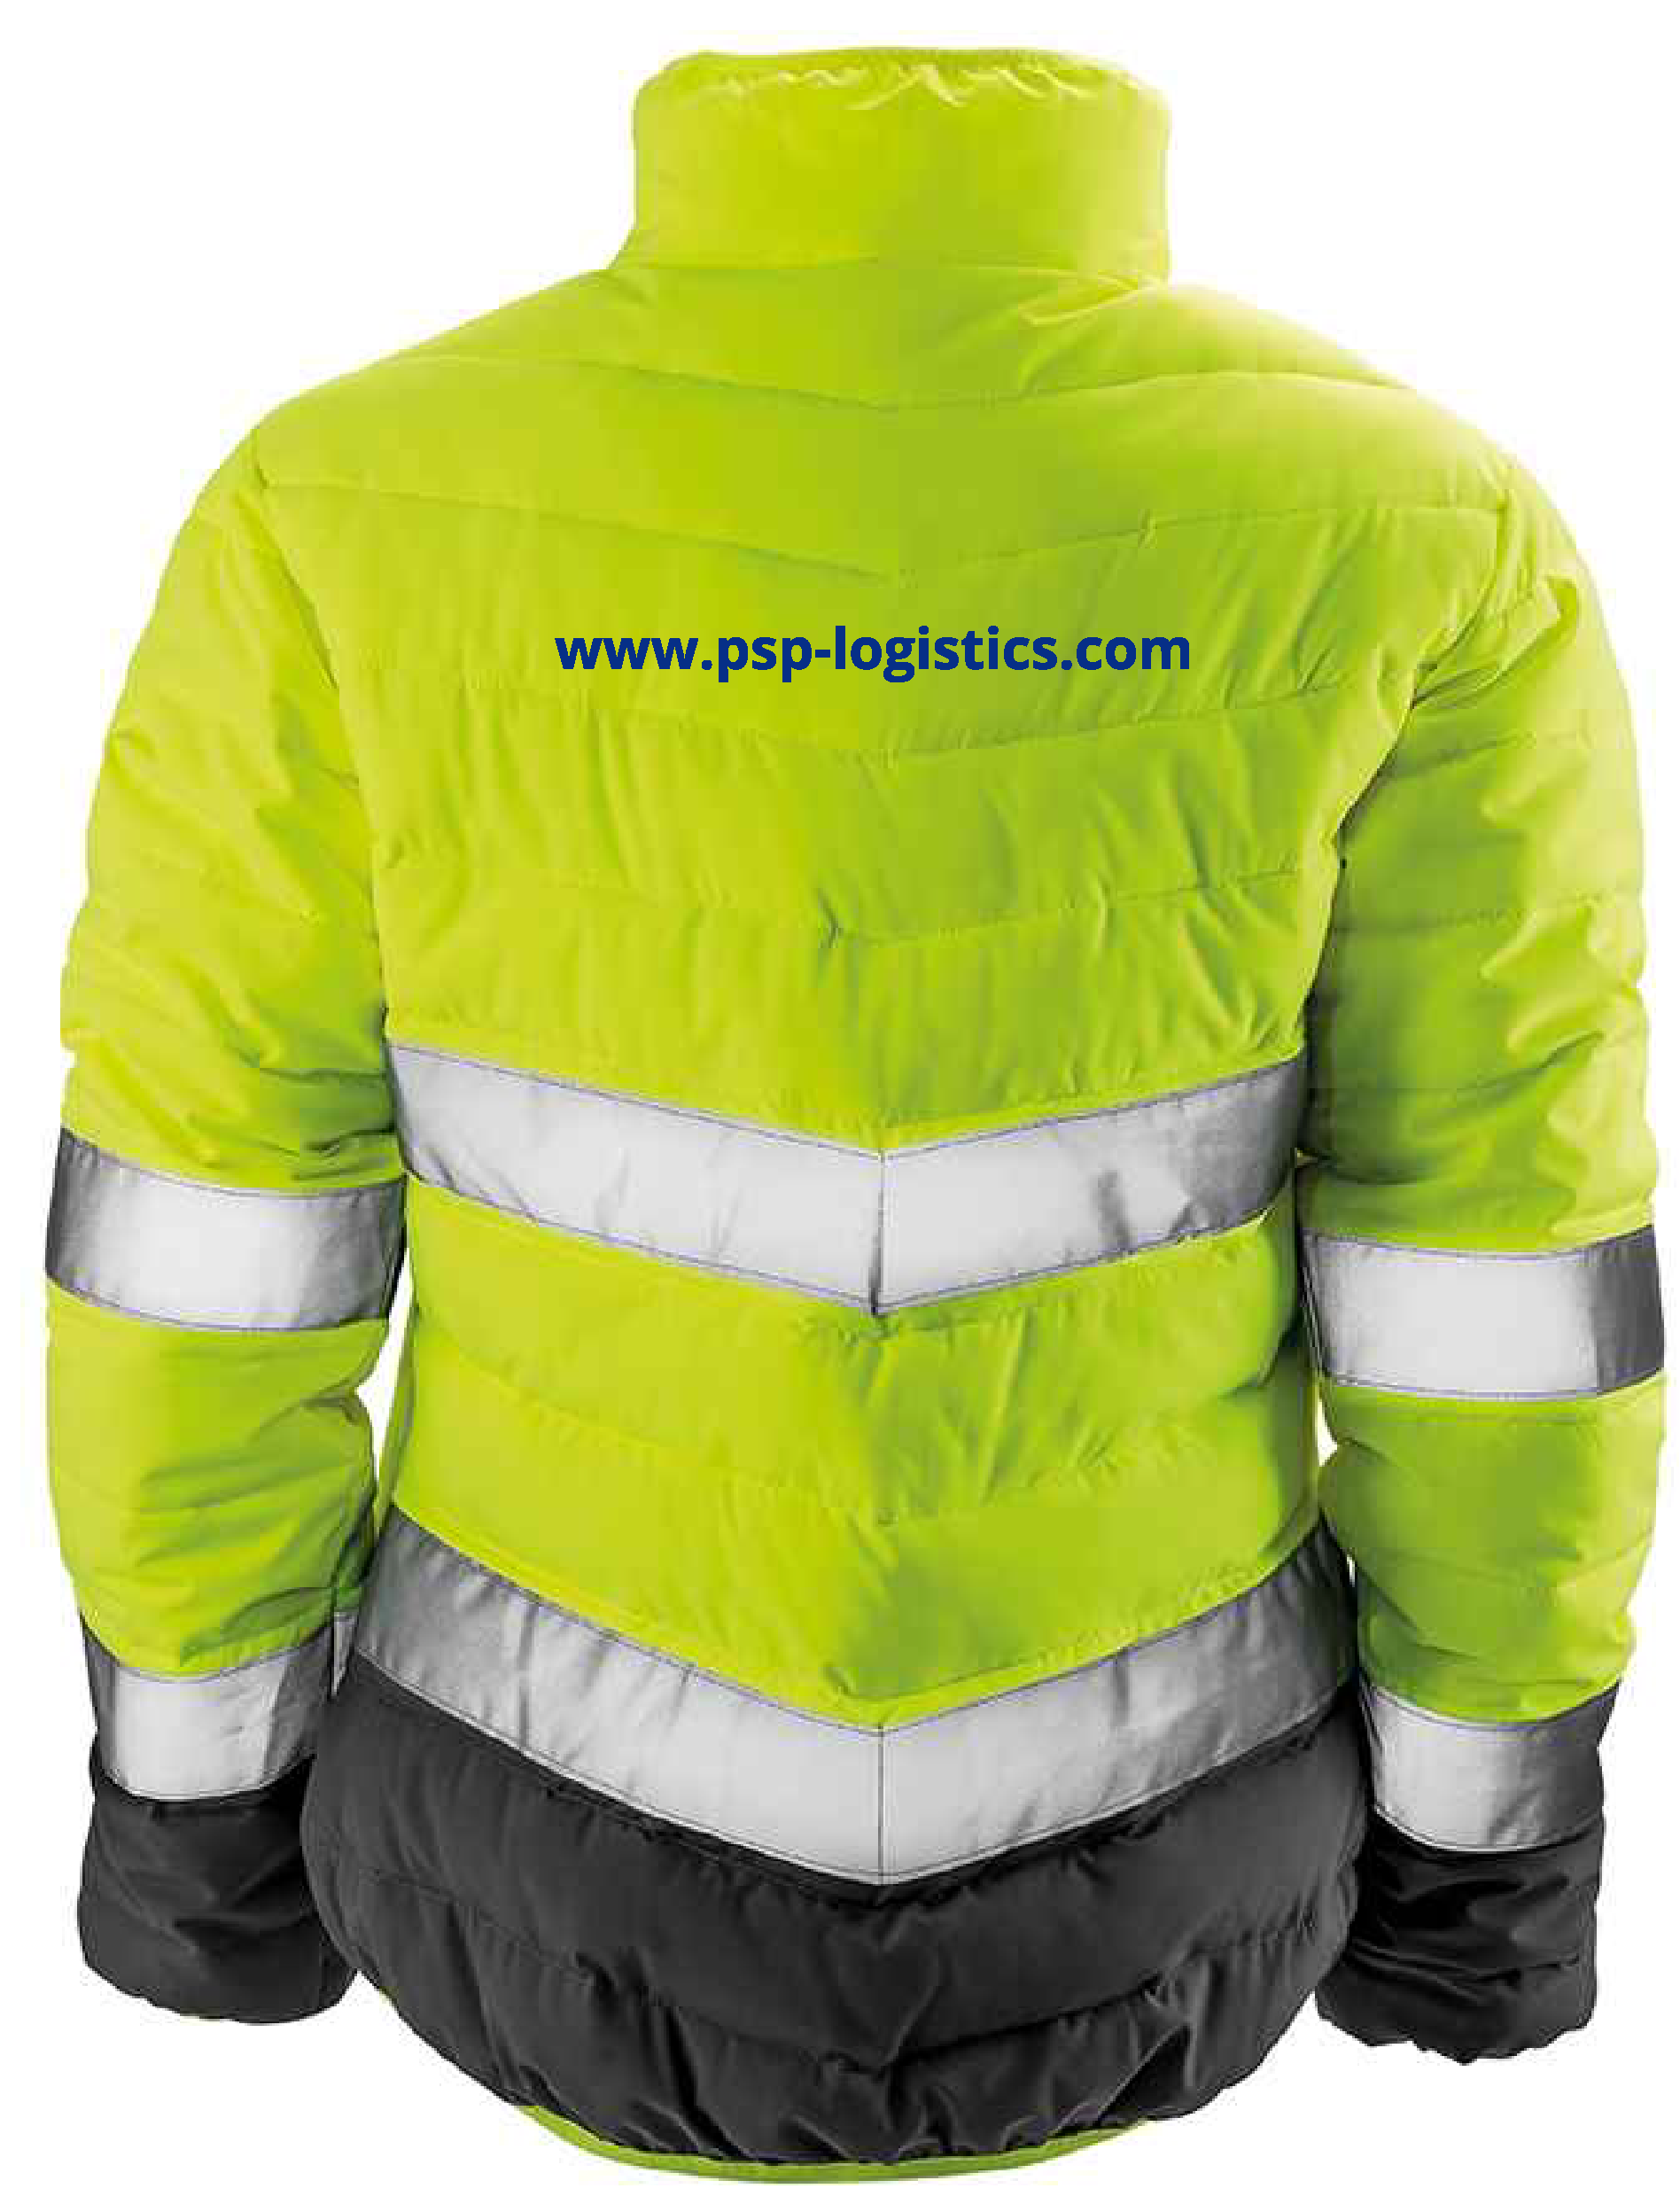 RS325F Ladies Result Result Safe-Guard High Viz Jacket